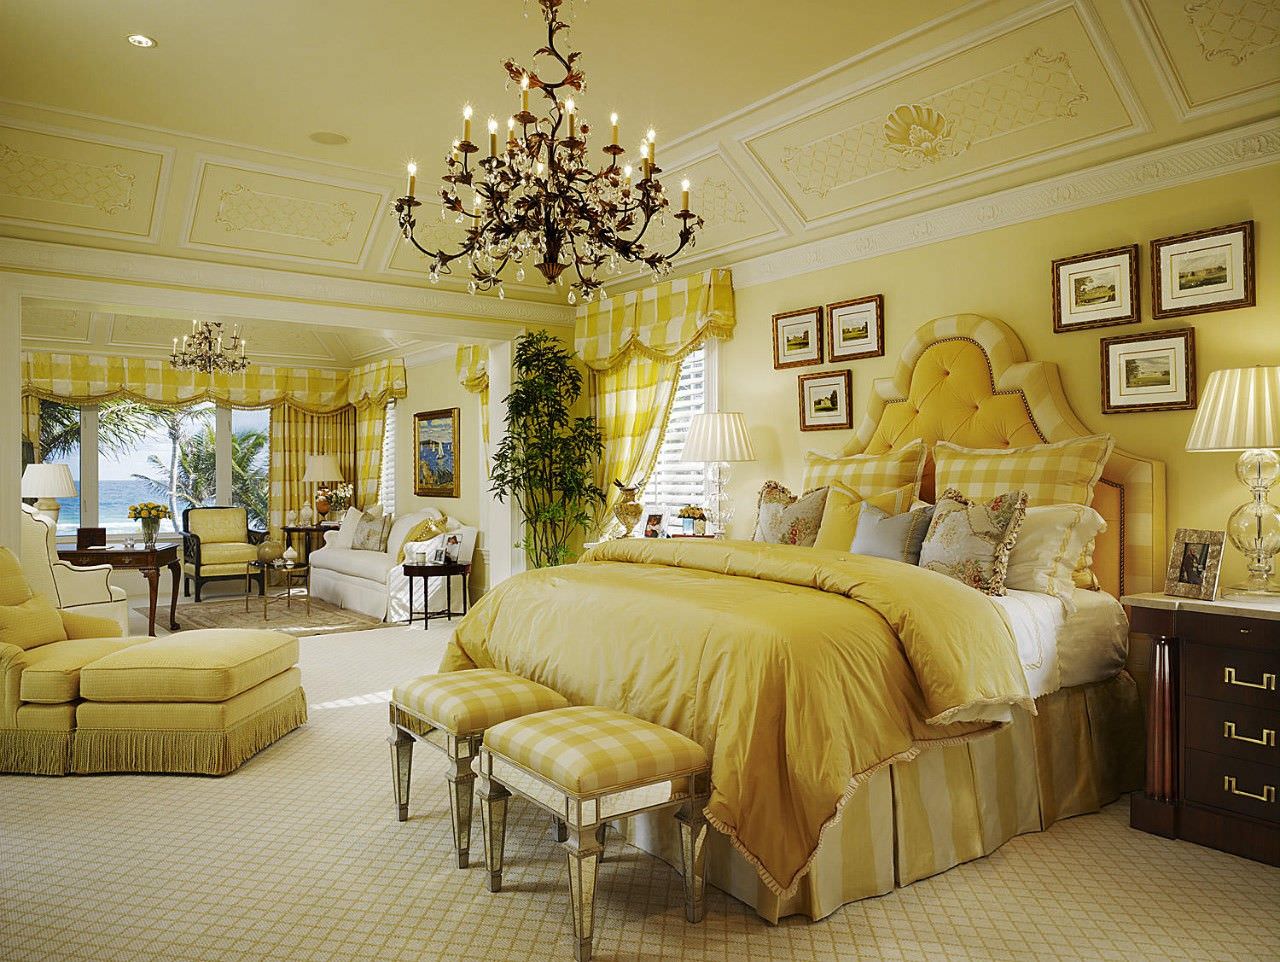 Phòng ngủ vintage với màu vàng chủ đạo kết hợp rèm sáo nhôm và rèm vải đẹp mắt